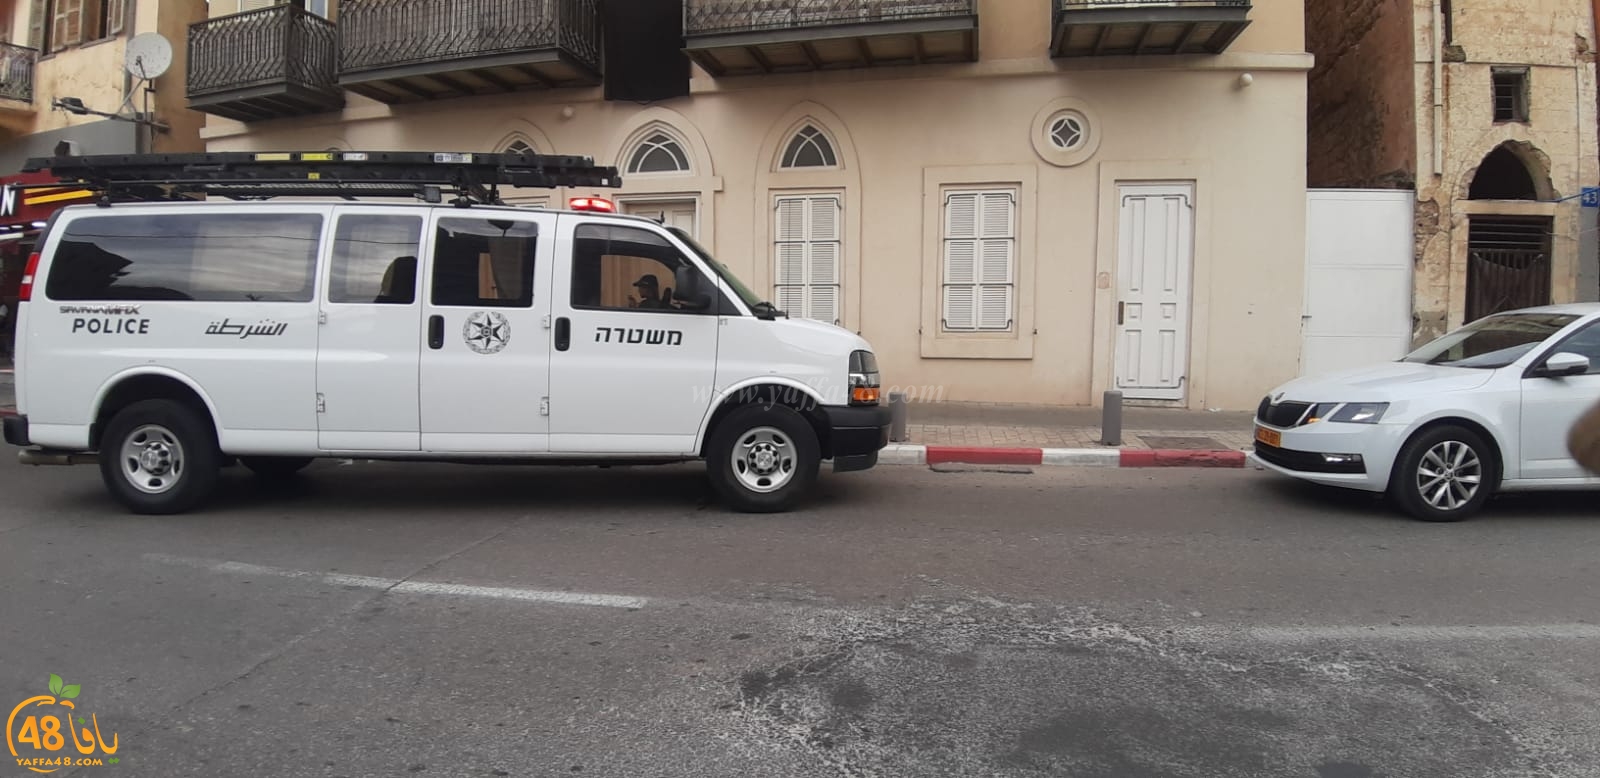  يافا: إلقاء قنبلة صوتية في شارع ييفت دون اصابات 